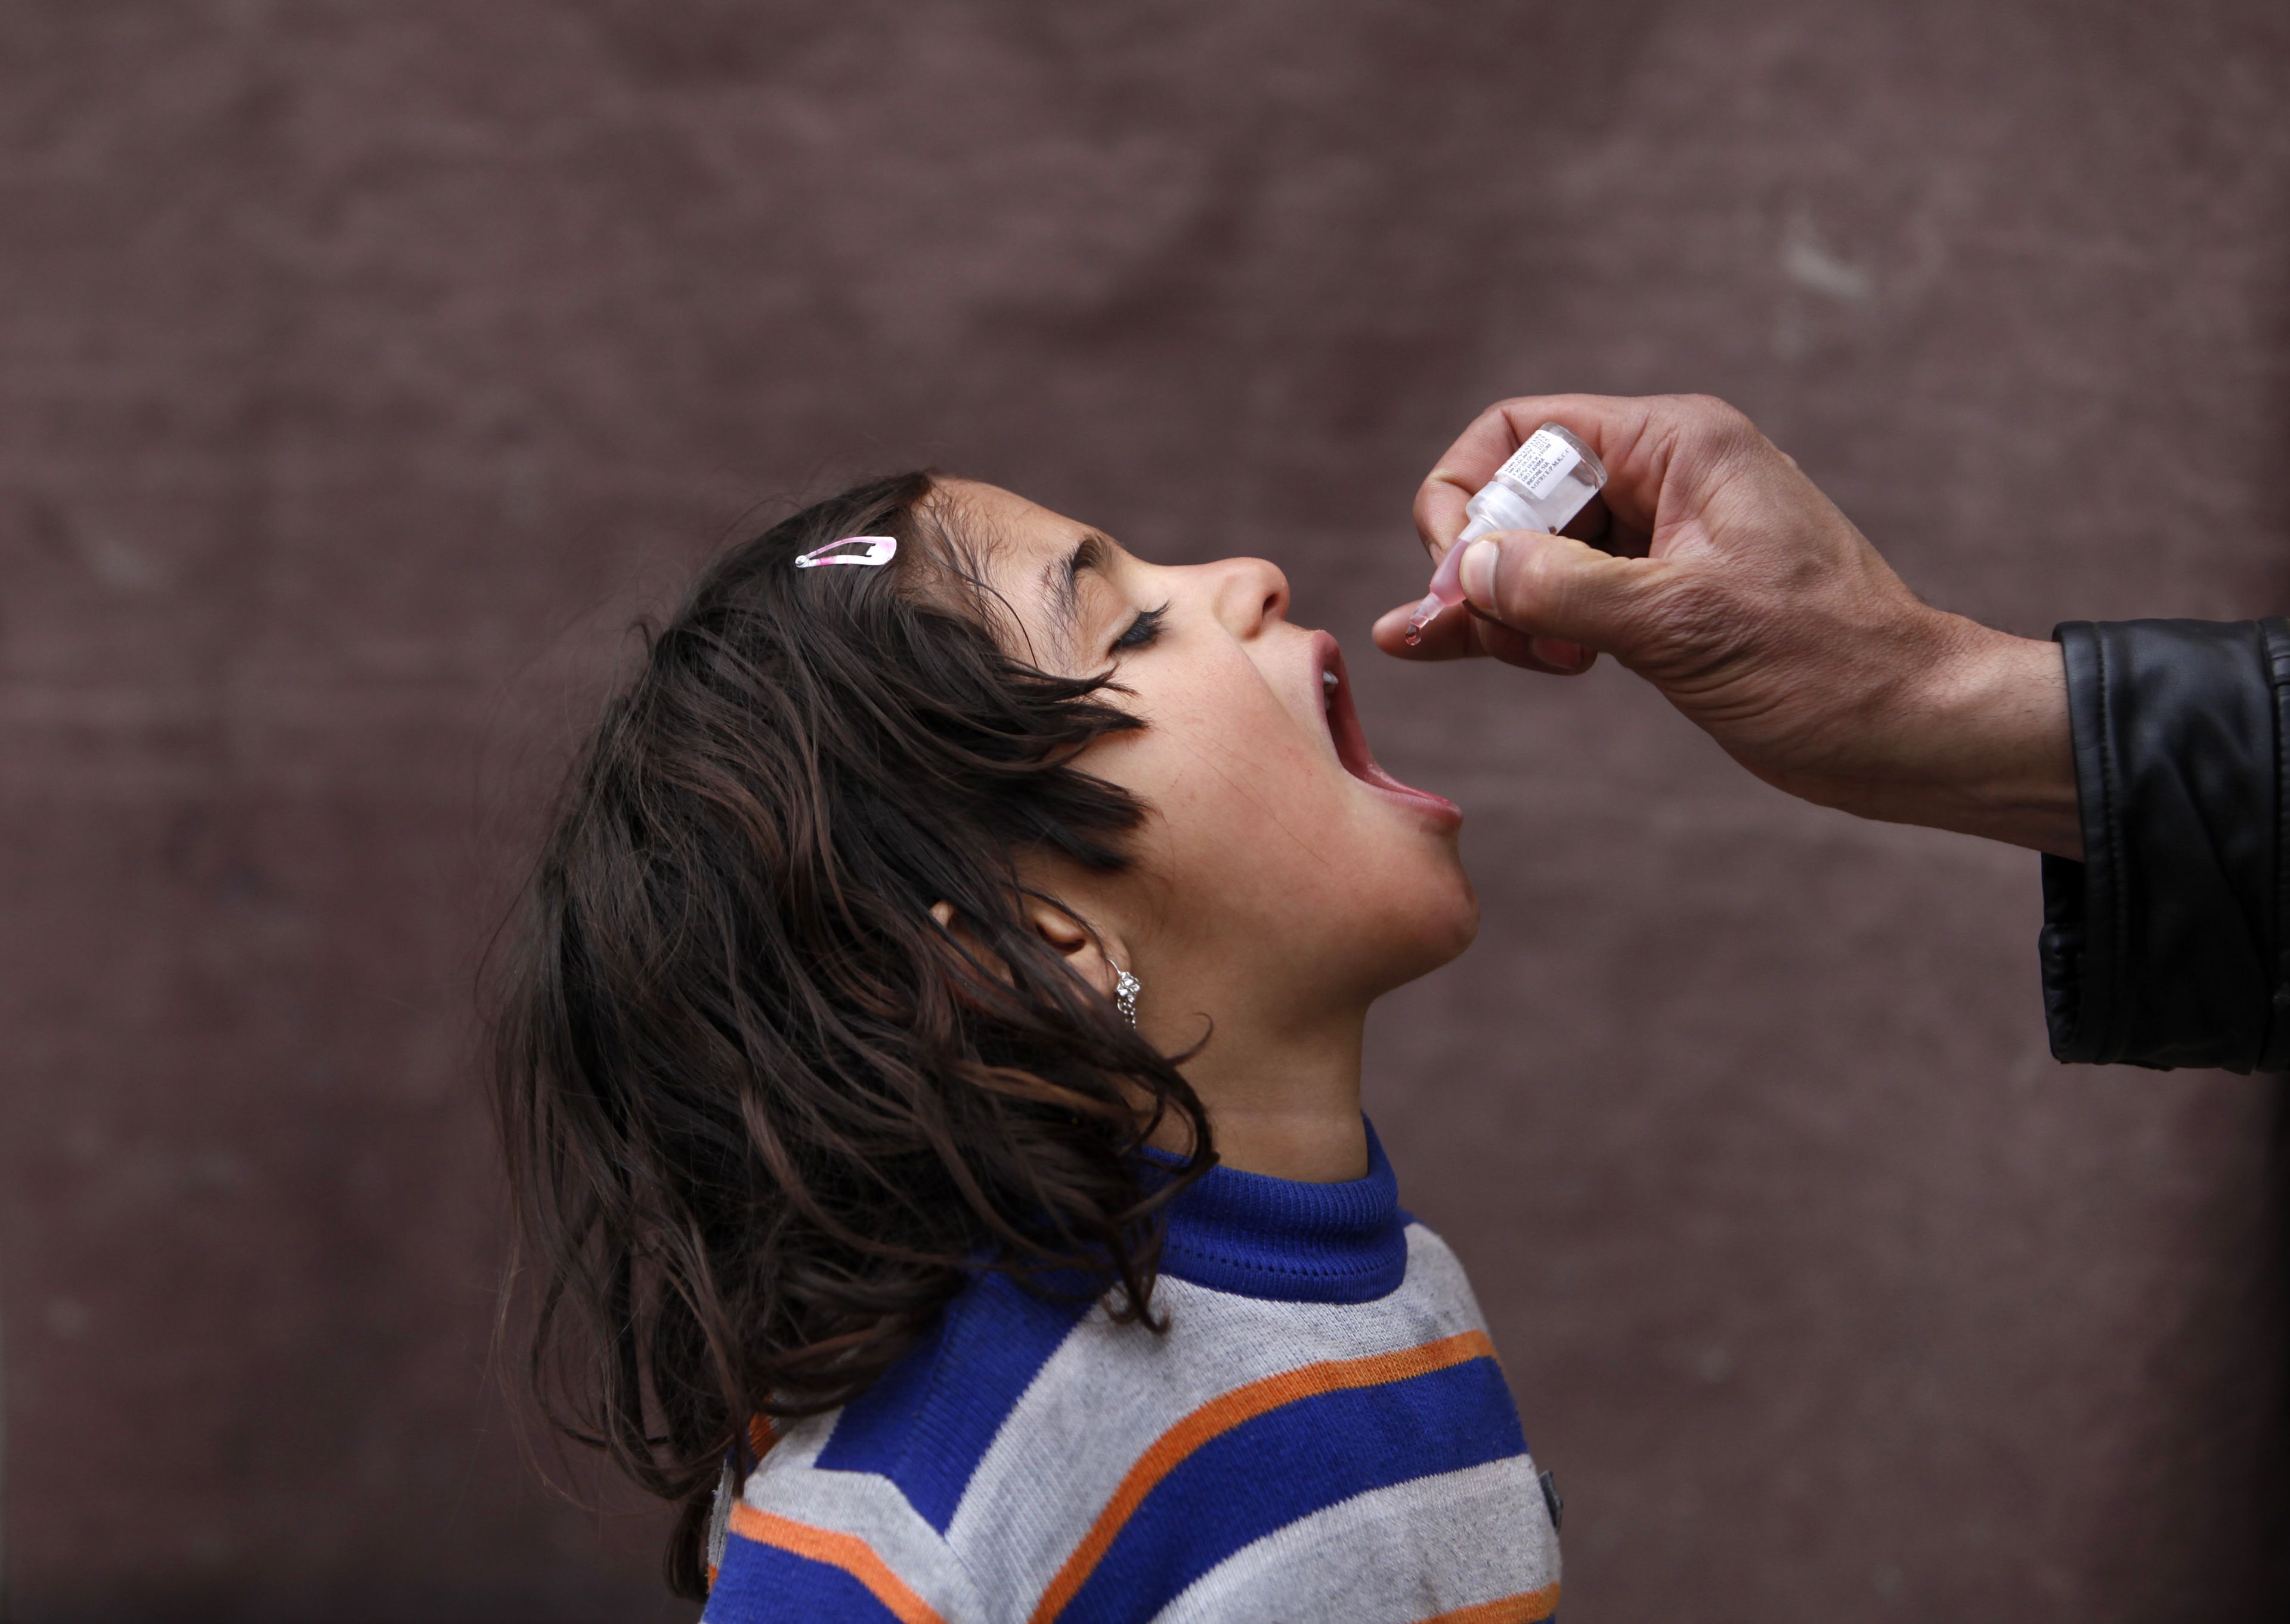 Una niña recibe una vacuna contra la polio